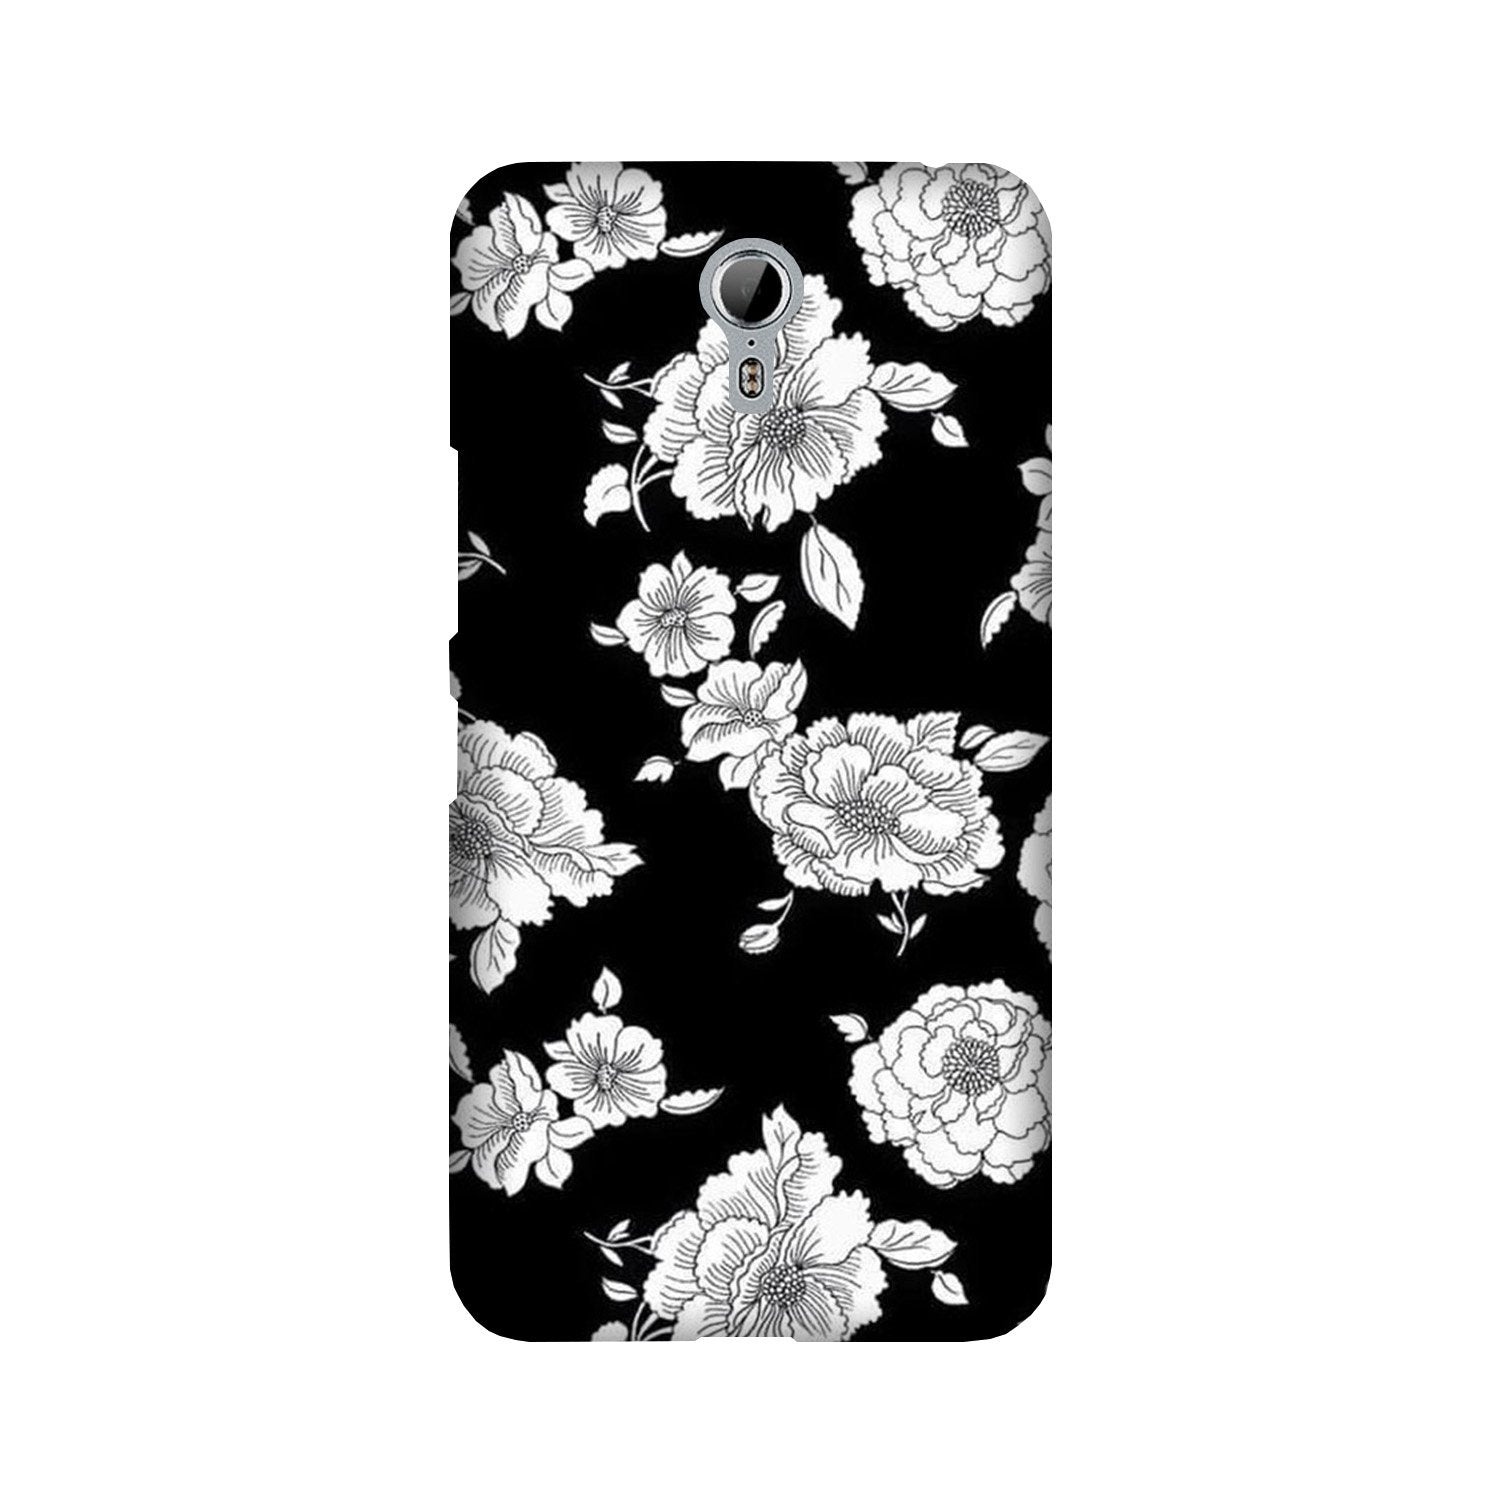 White flowers Black Background Case for Lenovo Zuk Z1